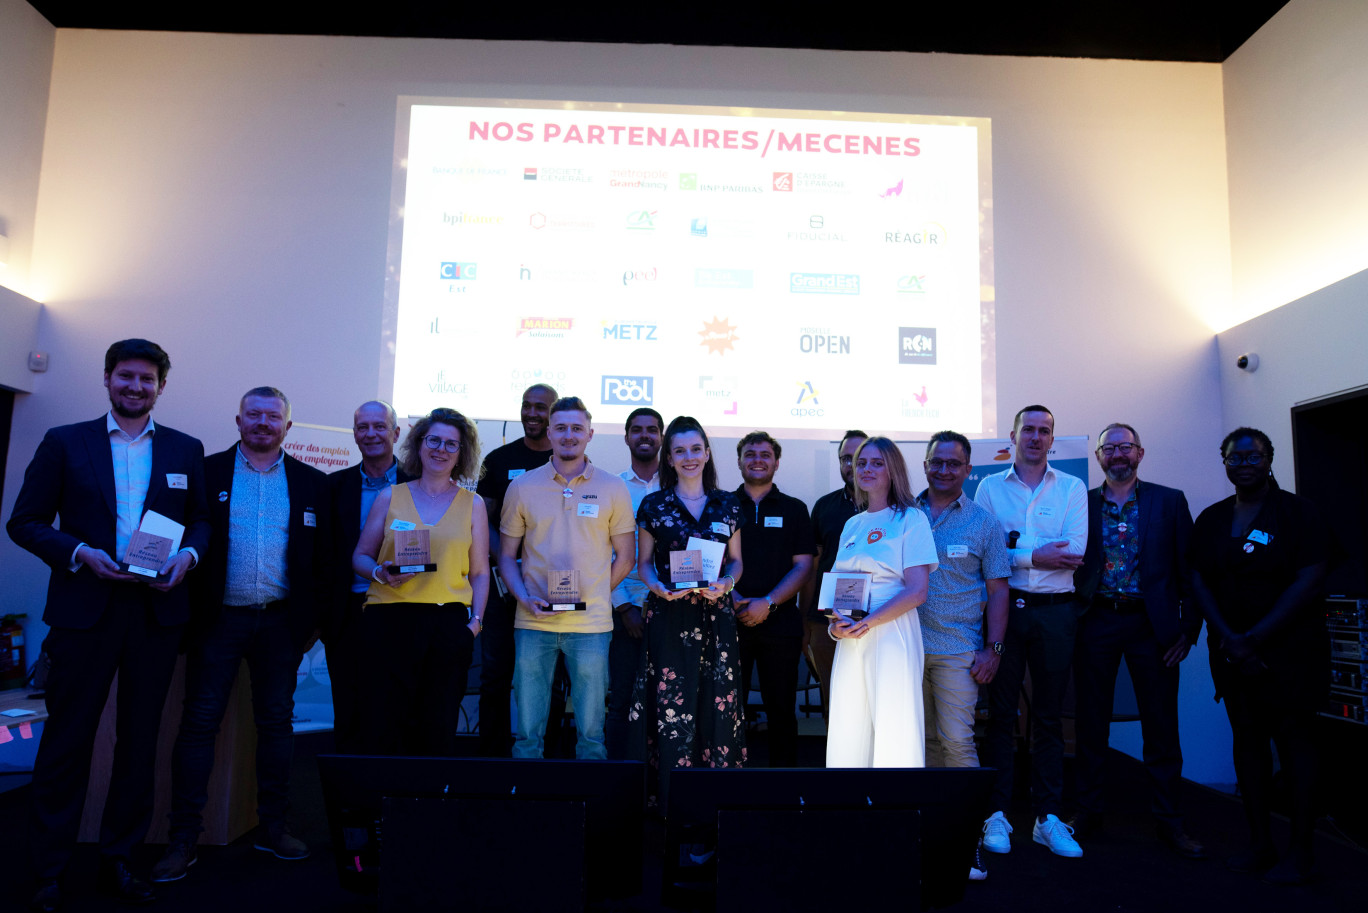 Vingt lauréats de Réseau Entreprendre Lorraine ont été mis en lumière à l’occasion de la traditionnelle Fête des lauréats de ce réseau le 8 juin dernier au stade Saint-Symphorien à Longeville-lès-Metz. 